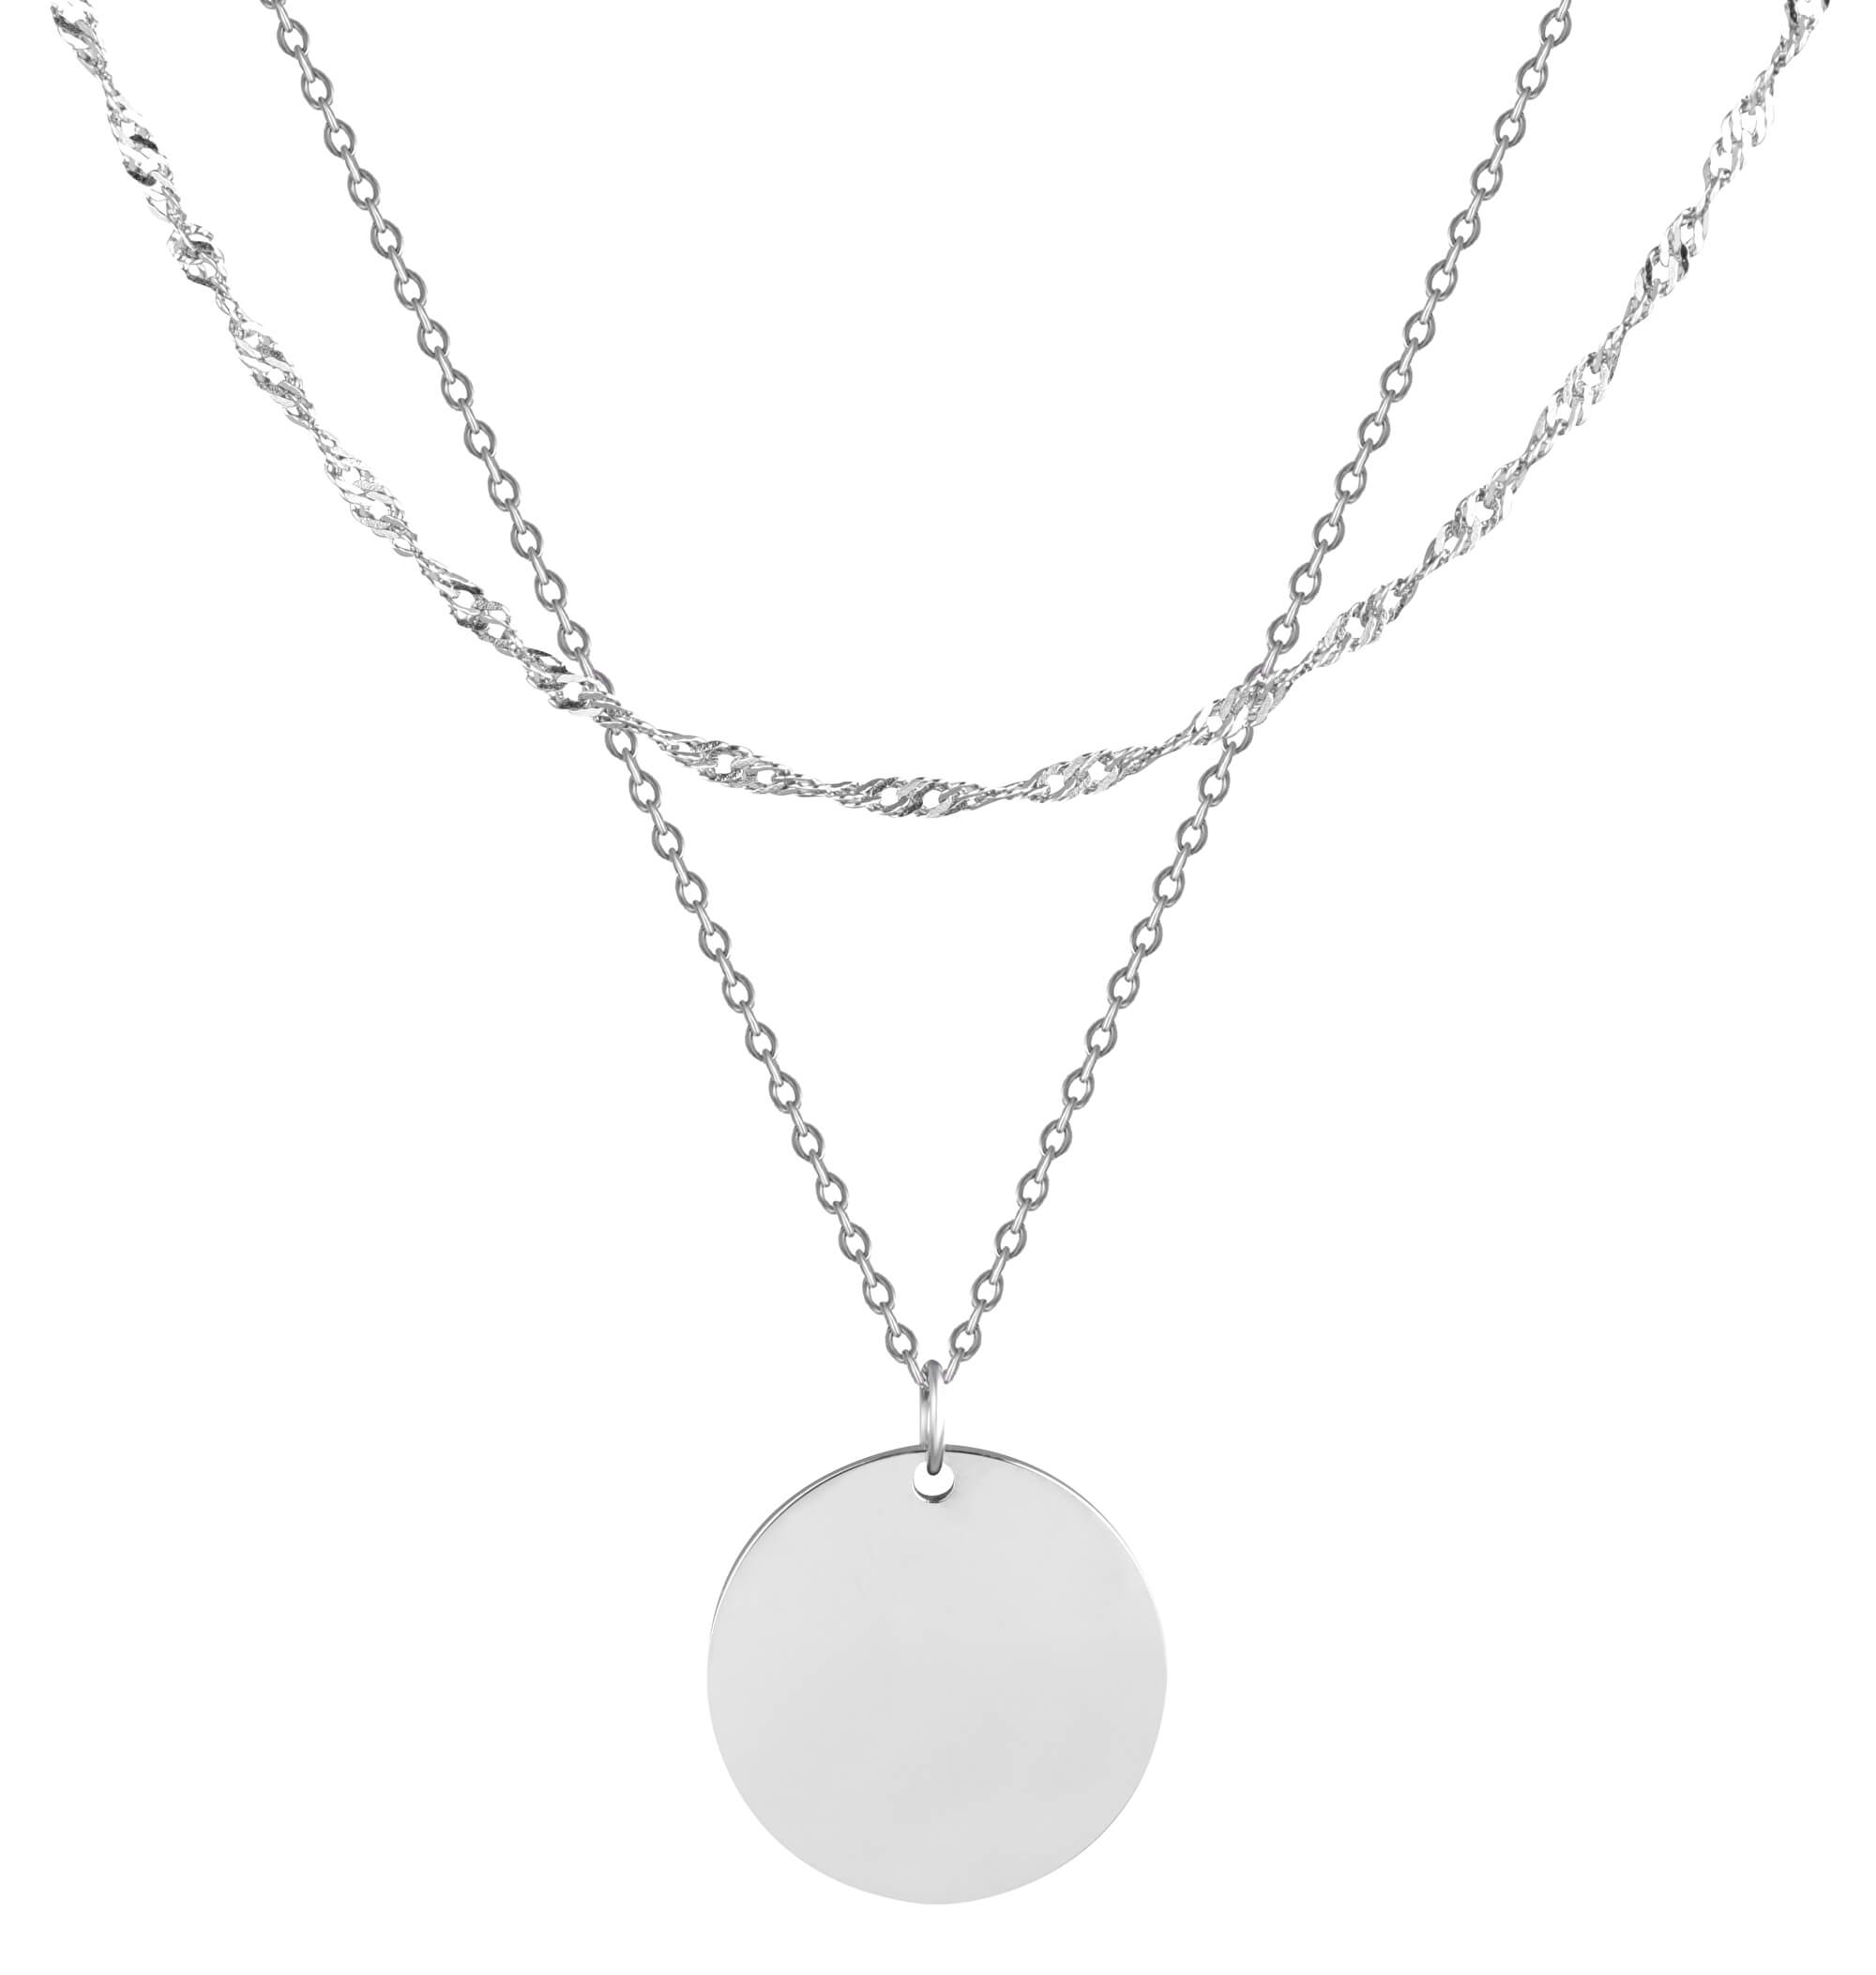 Troli Dvojitý ocelový náhrdelník s kruhovým přívěskem